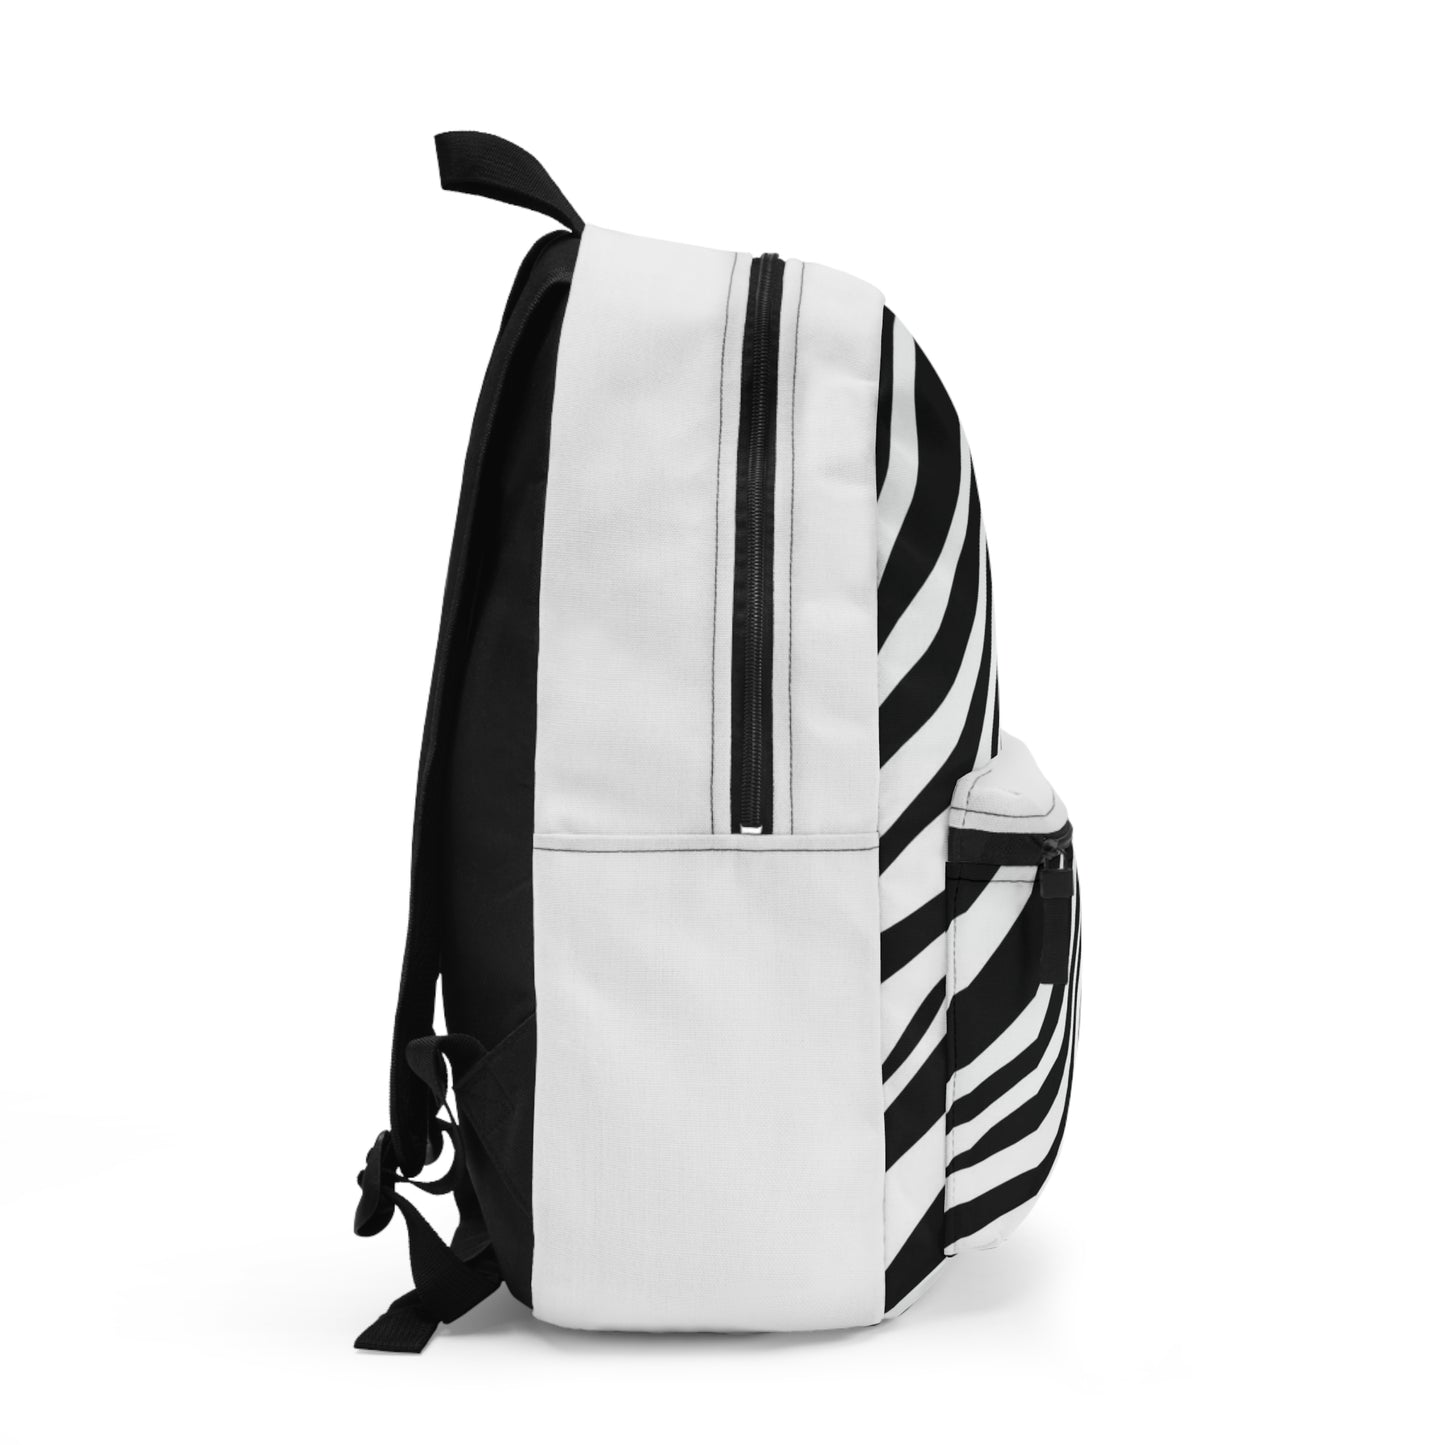 Zebra Backpack